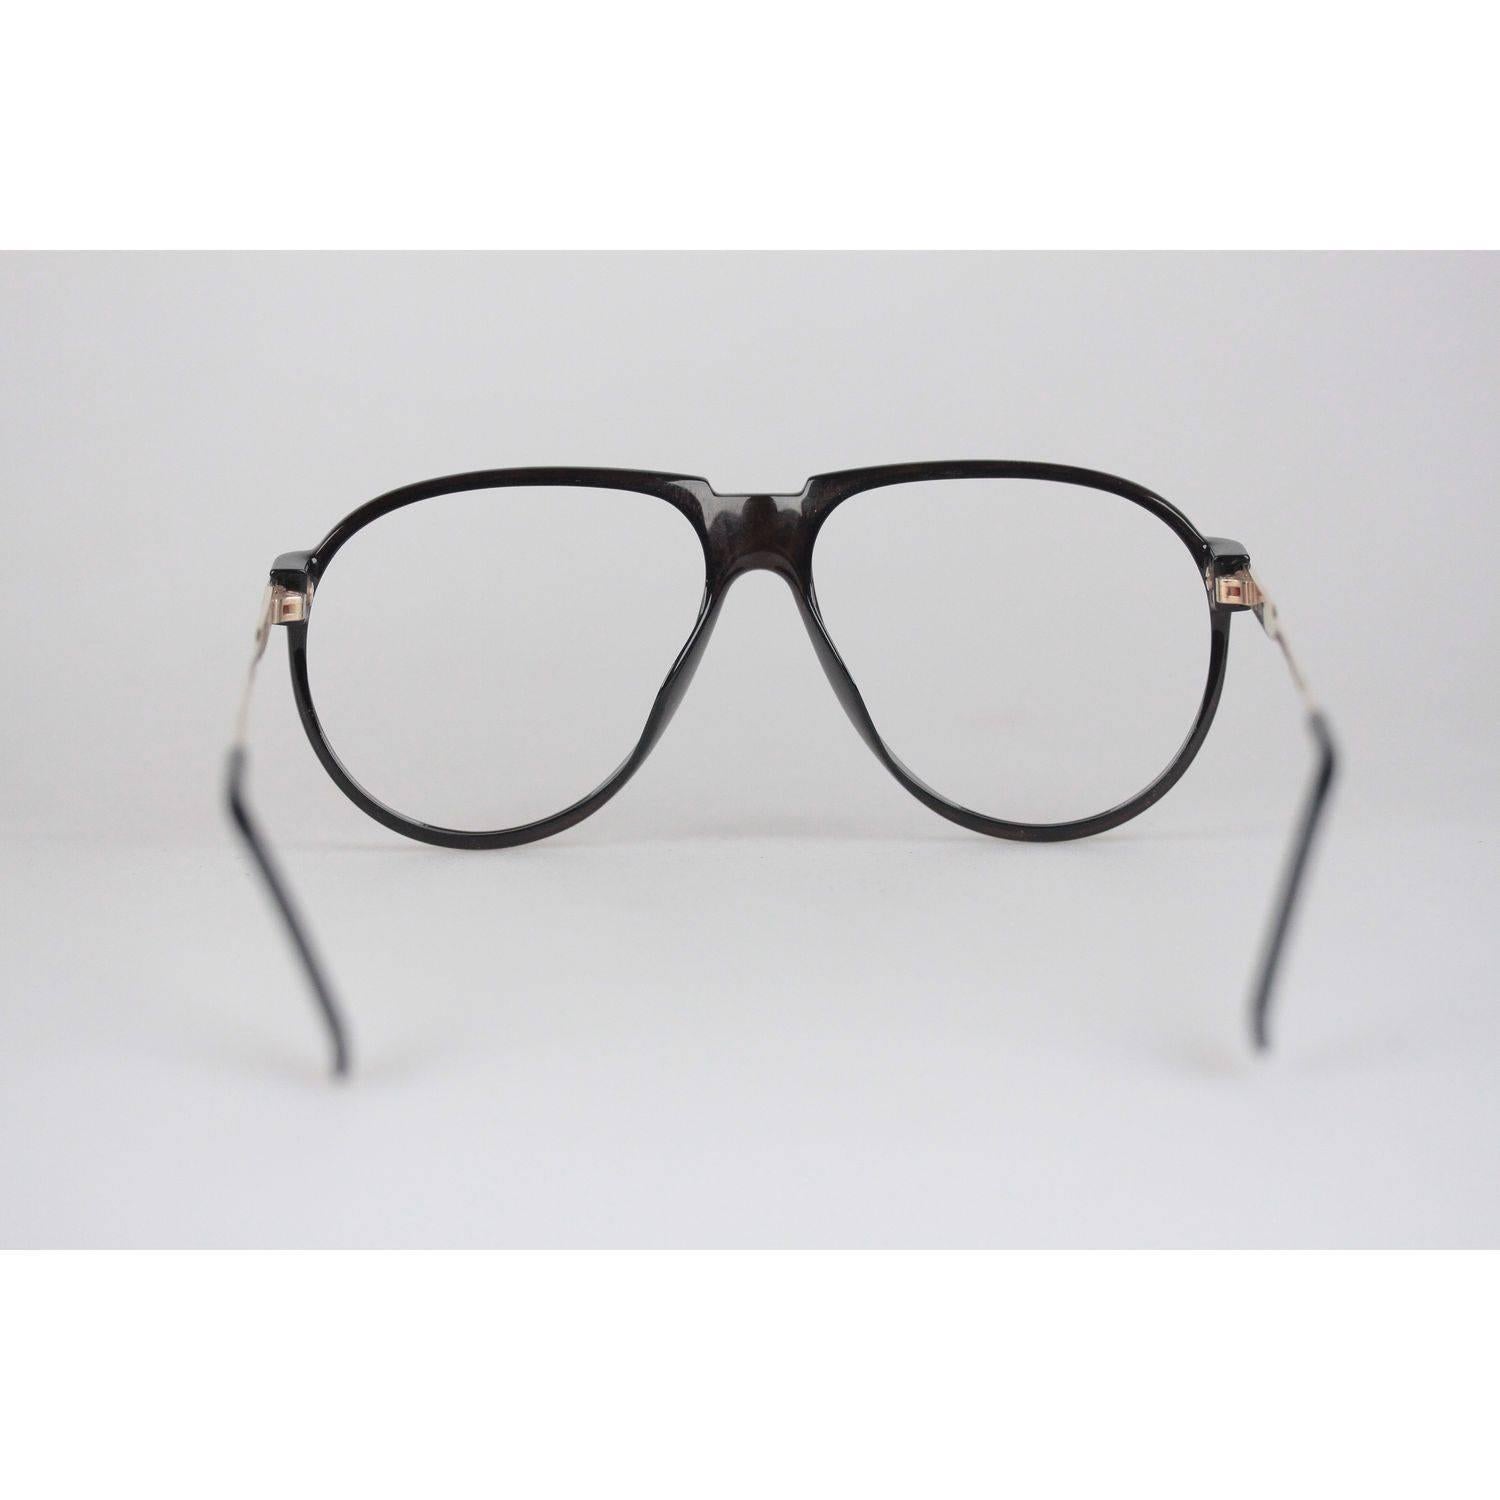 Men's Christian Dior Monsieur Vintage Black Striped Frame Eyeglasses 2266 60mm 135 NOS